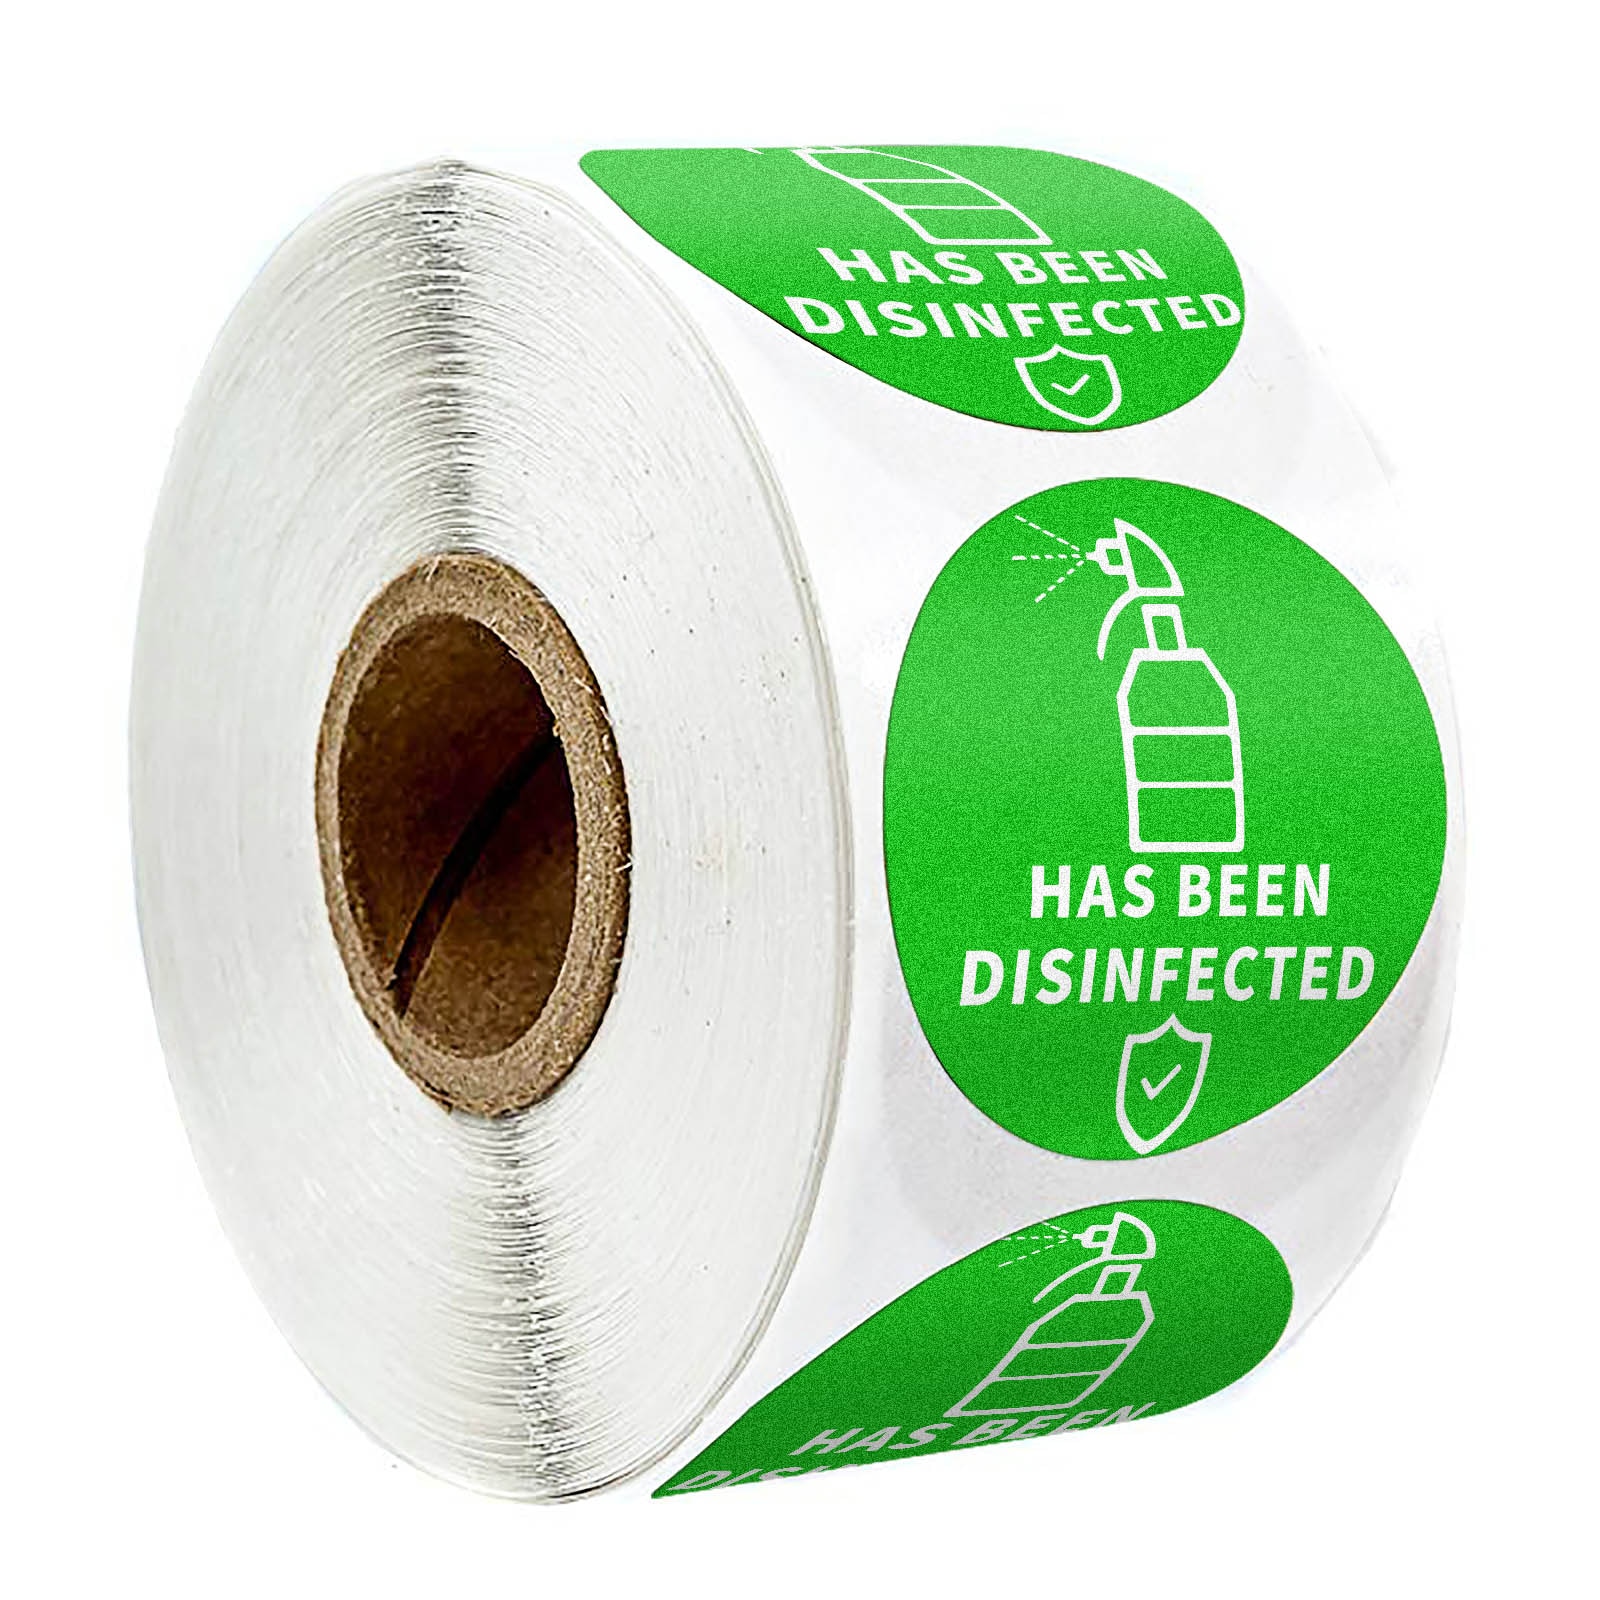 300 Pcs/Roll Ronde 'Has Geweest Disinfected' Stickers Seal Label Met 1.5Inch Groene Veilig En Virus-Gratis verpakking Label Stickers